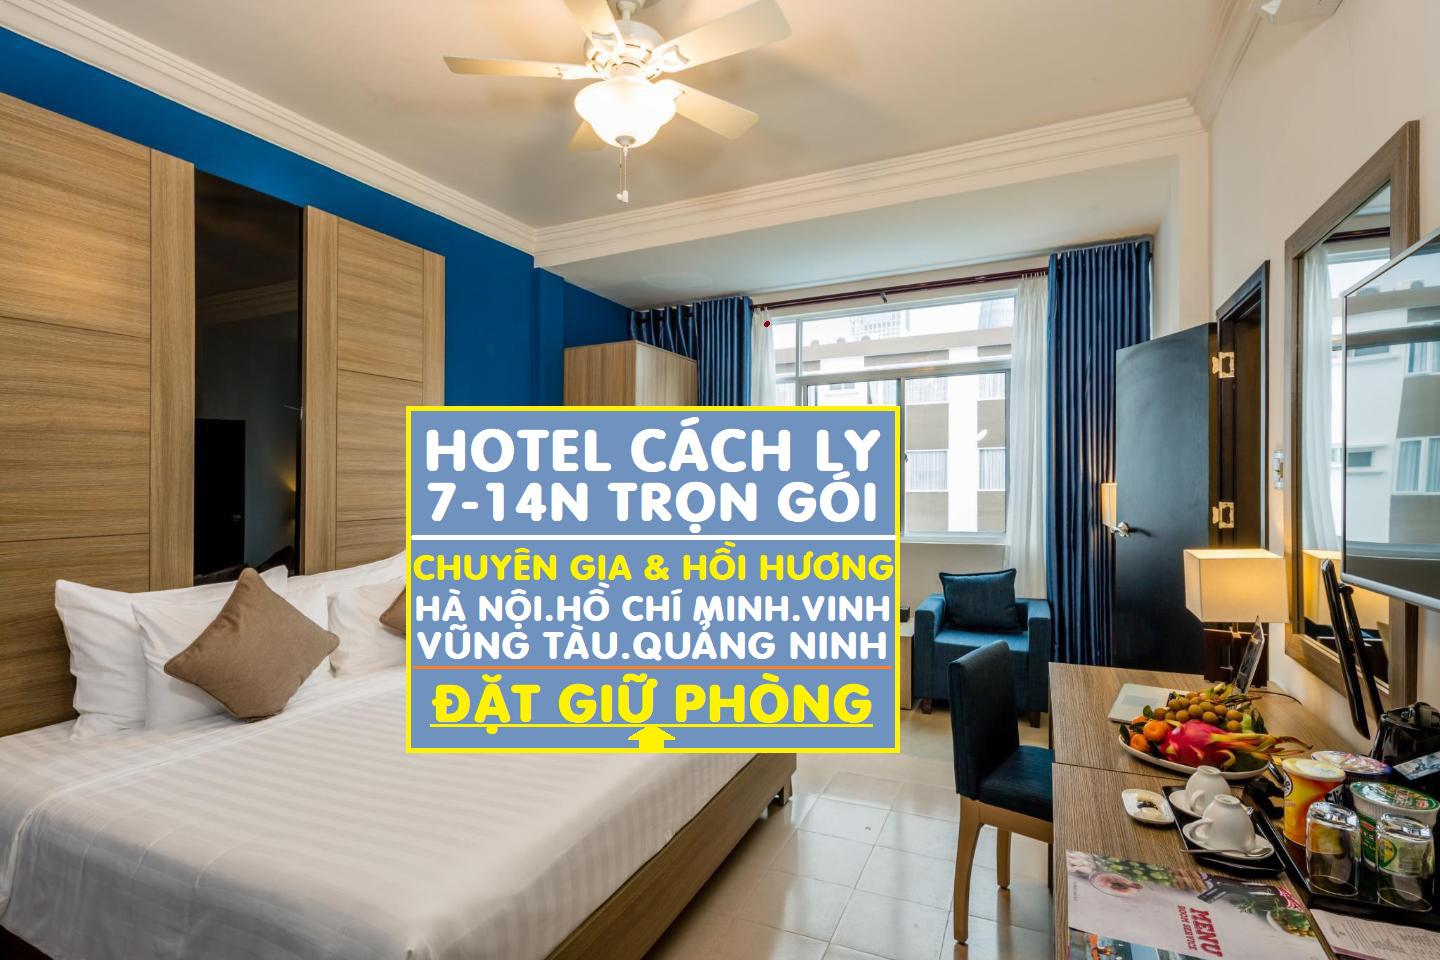 Danh sách khách sạn cách ly tại Sài Gòn trọn gói 14 ngày